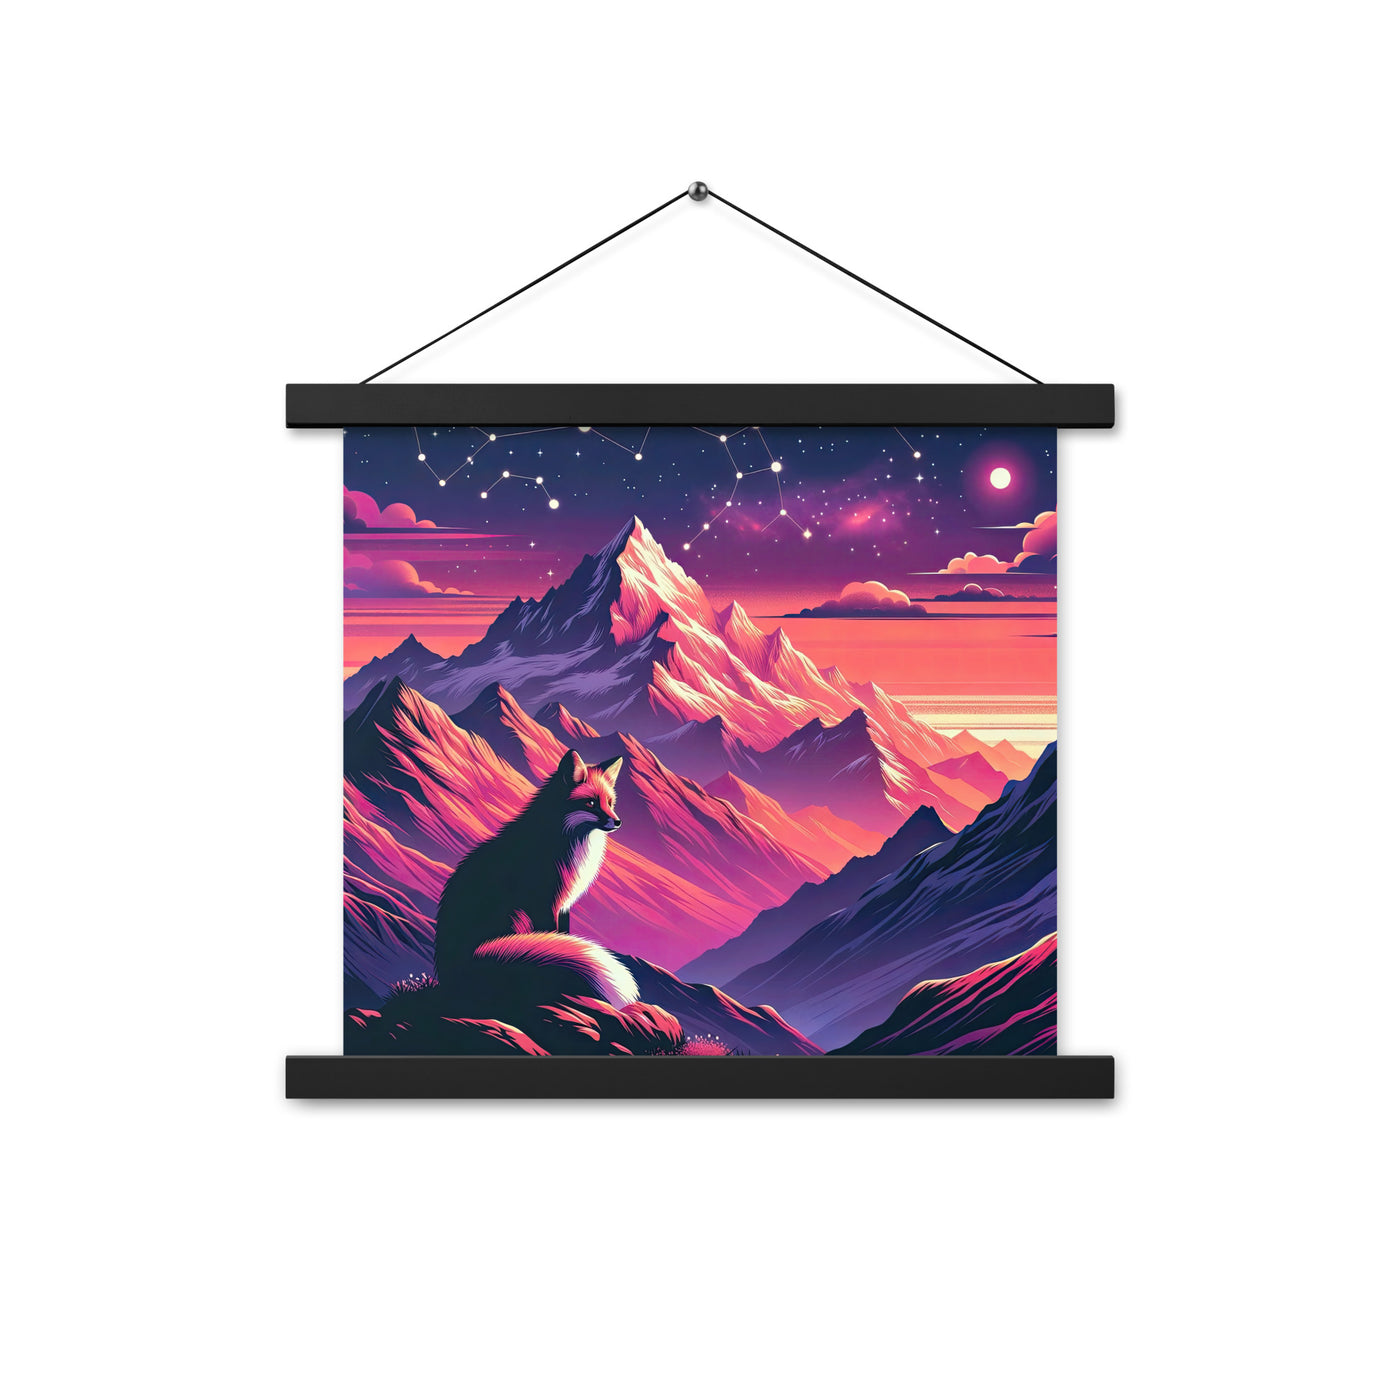 Fuchs im dramatischen Sonnenuntergang: Digitale Bergillustration in Abendfarben - Premium Poster mit Aufhängung camping xxx yyy zzz 35.6 x 35.6 cm